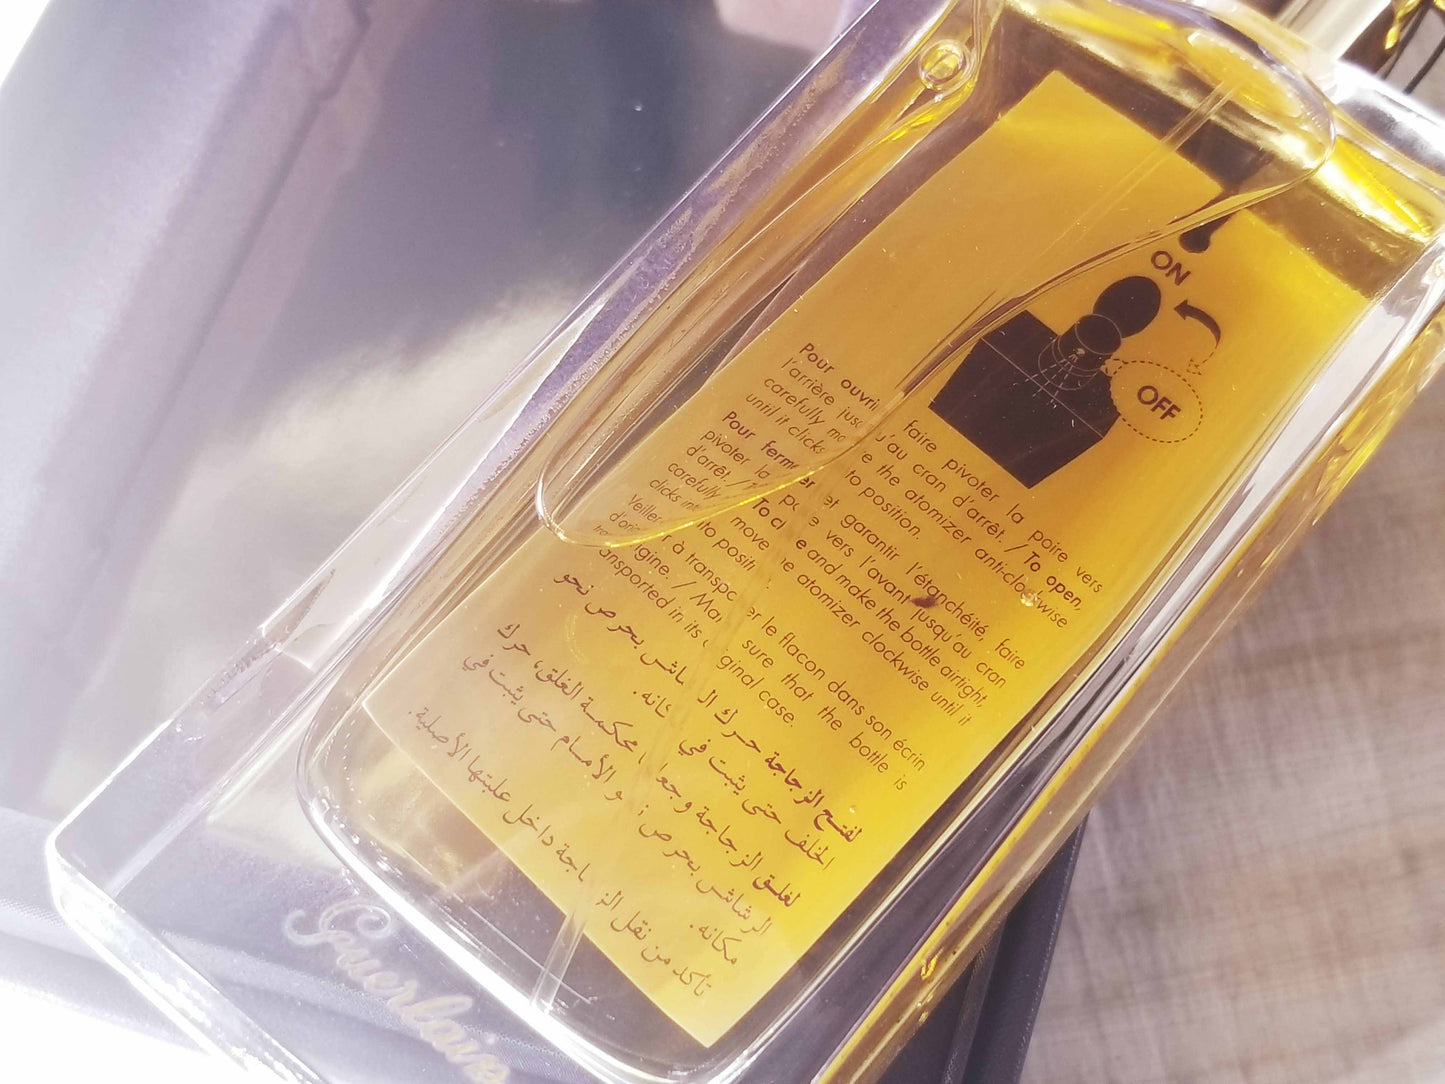 Bois d'Armenie Guerlain Unisex EDP Spray 75 ml 2.5 oz, Vintage, Rare